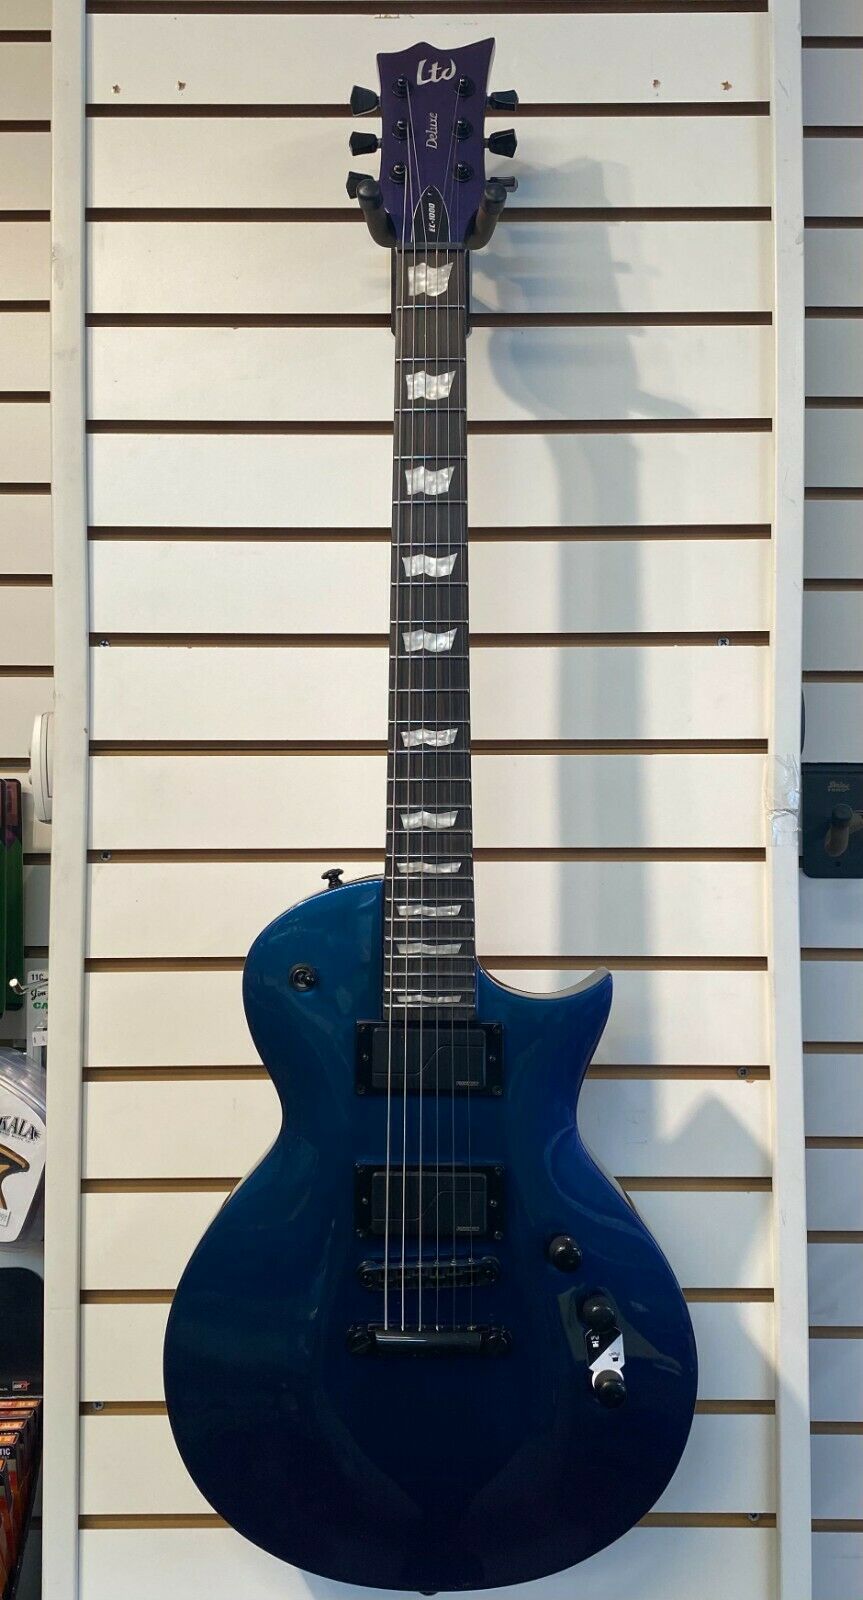 ESP/LTD EC-1000 Deluxe Electric Guitar "Violet Andromeda"